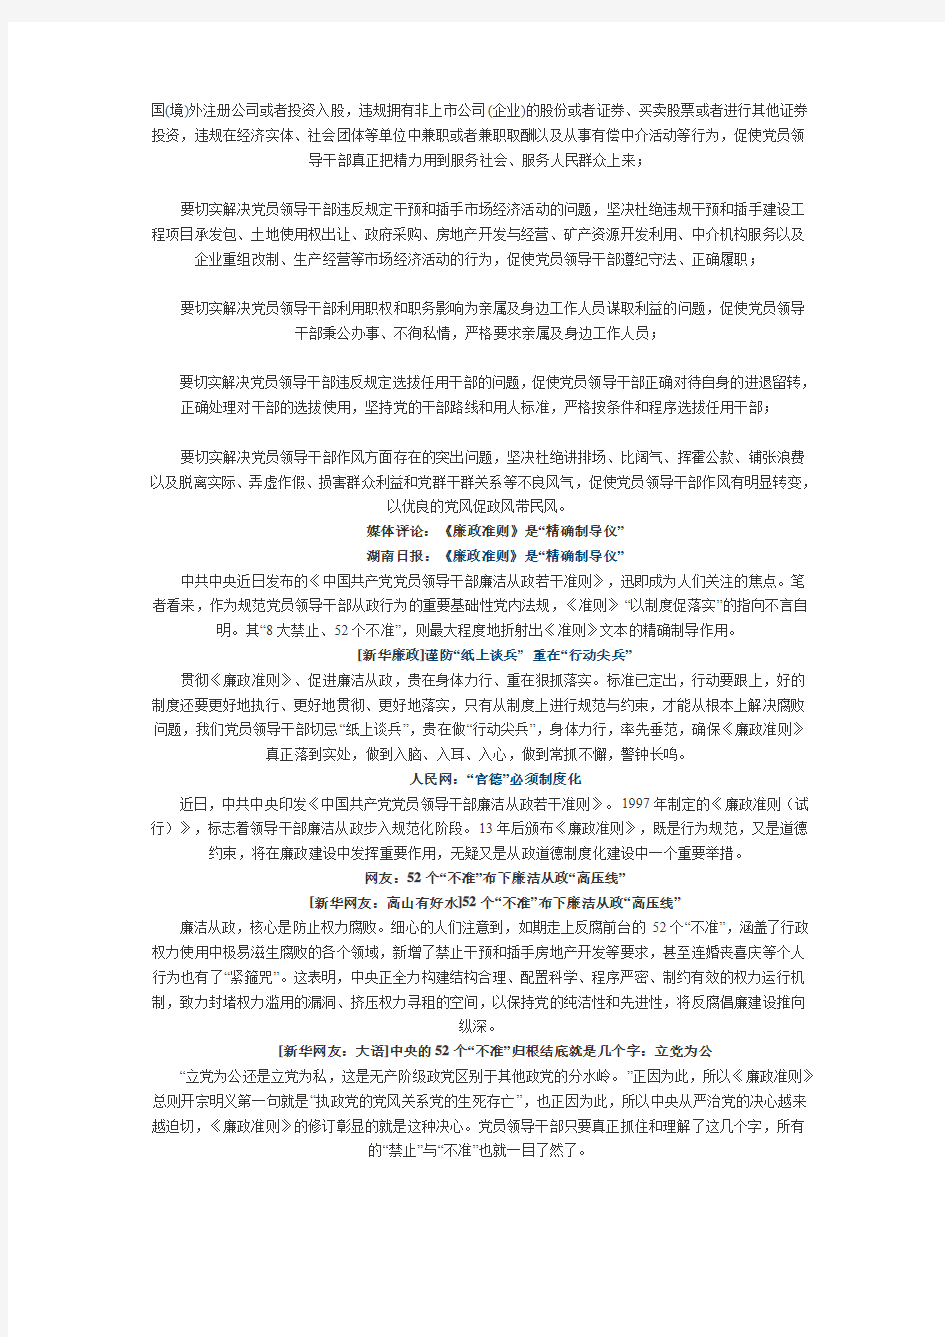 中共发布廉政准则 52个“不准”规范干部行为